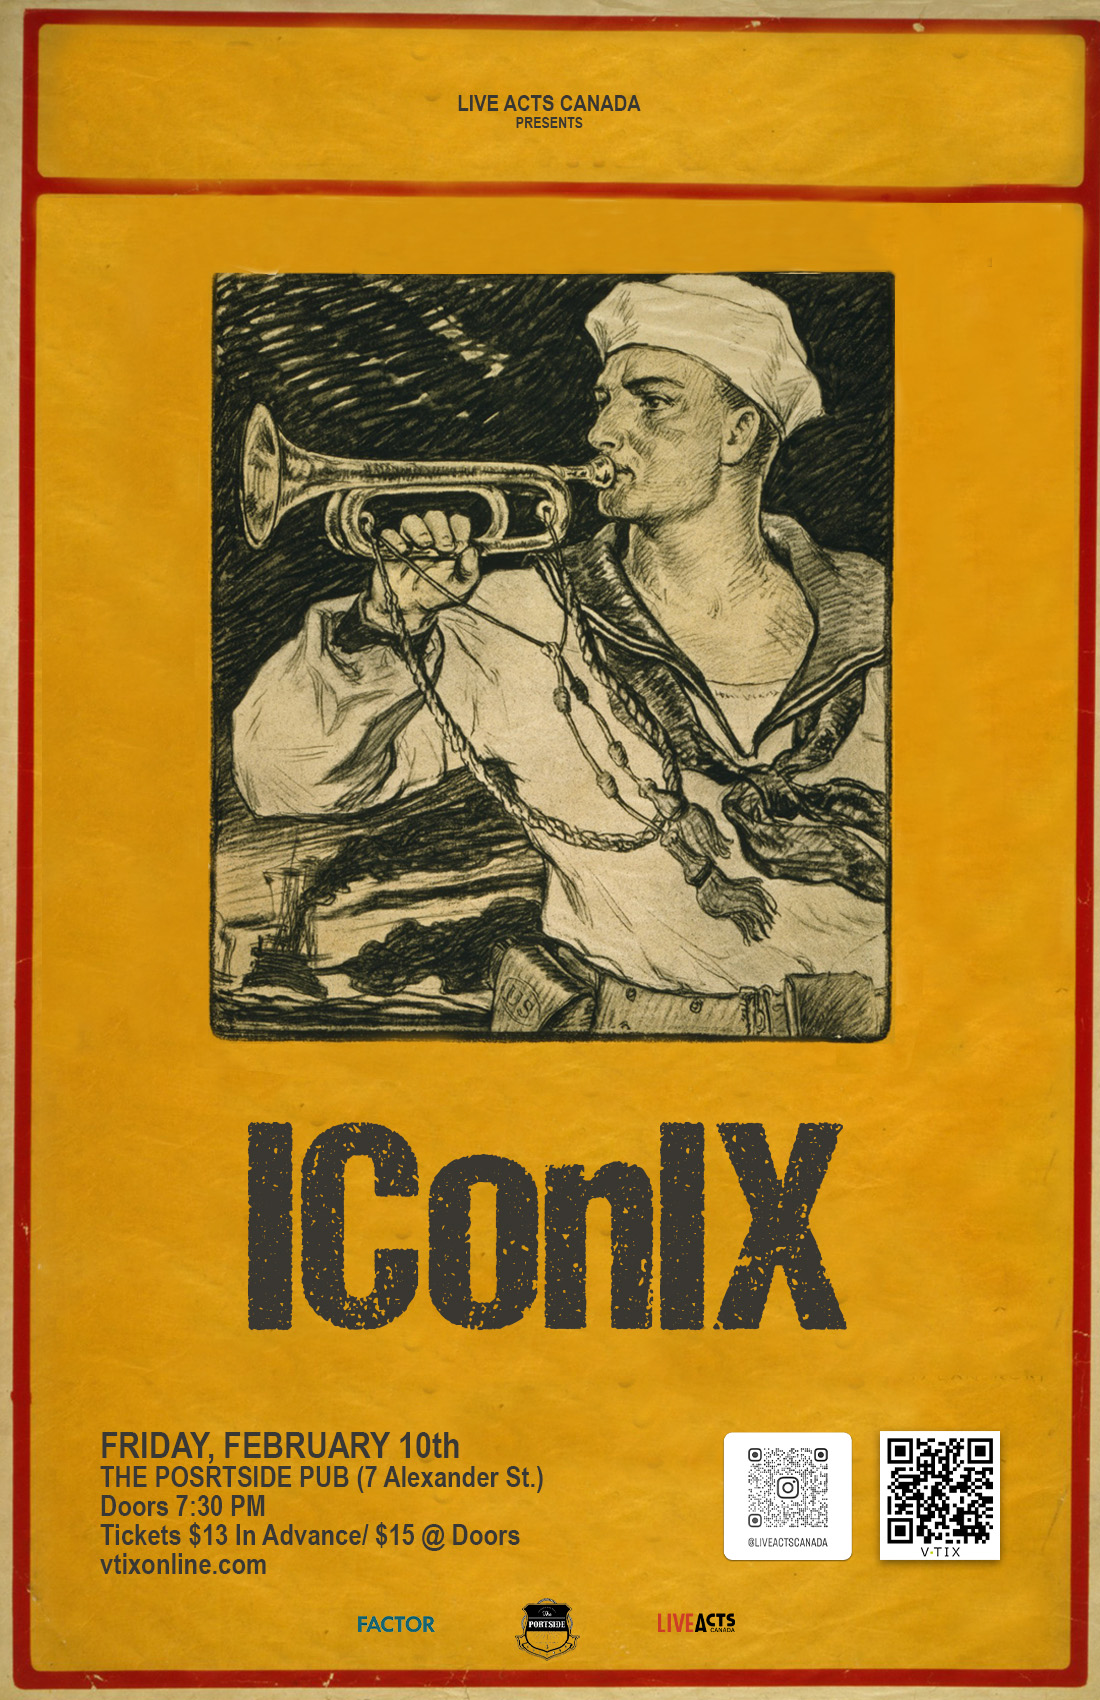 IConIX